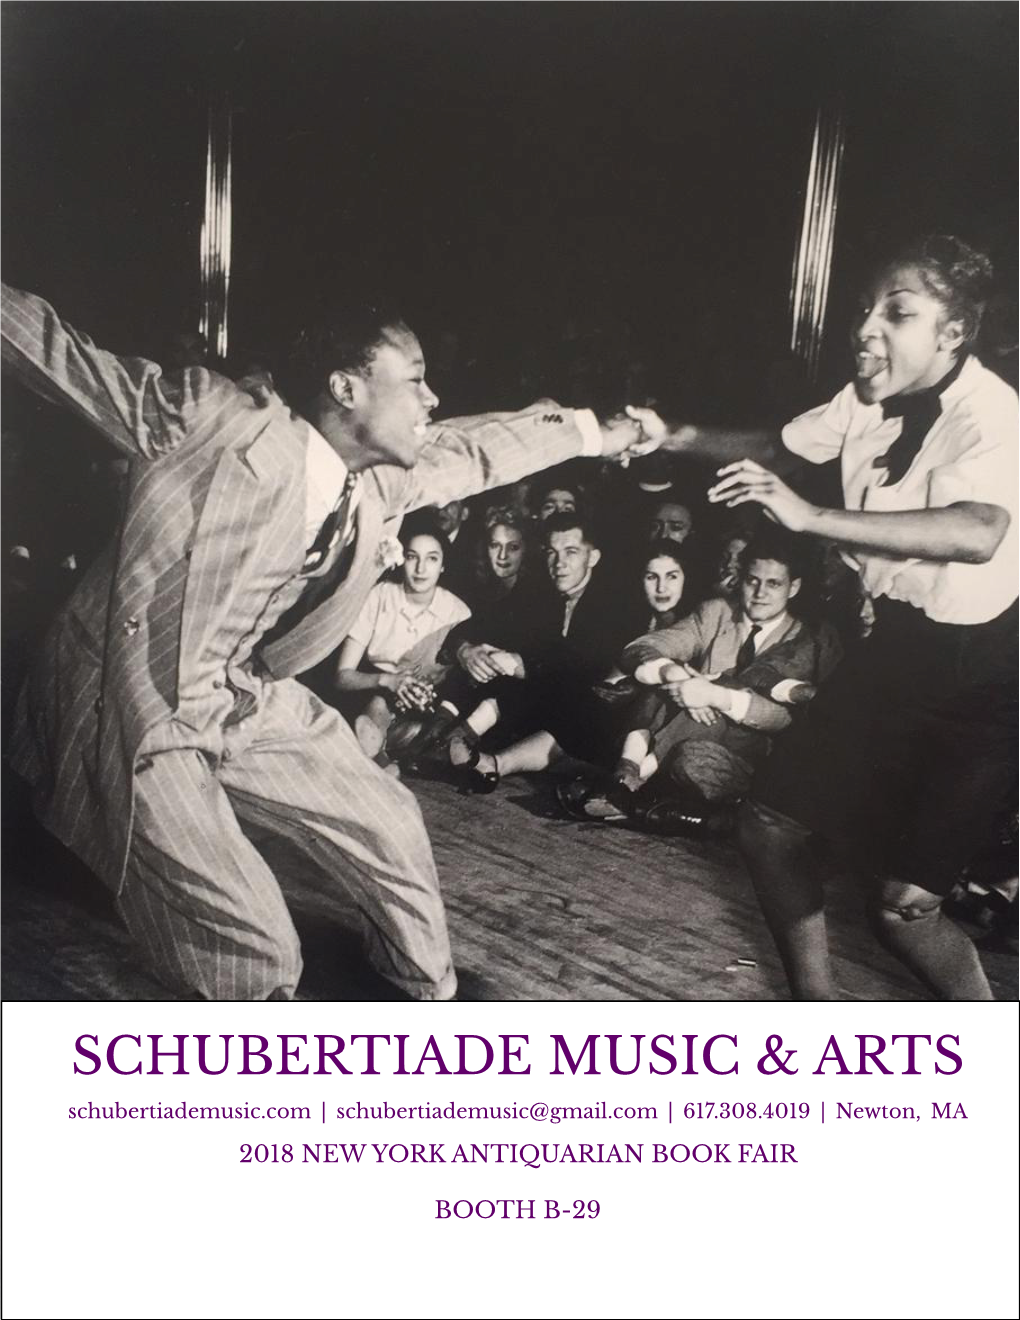 Schubertiade Music & Arts